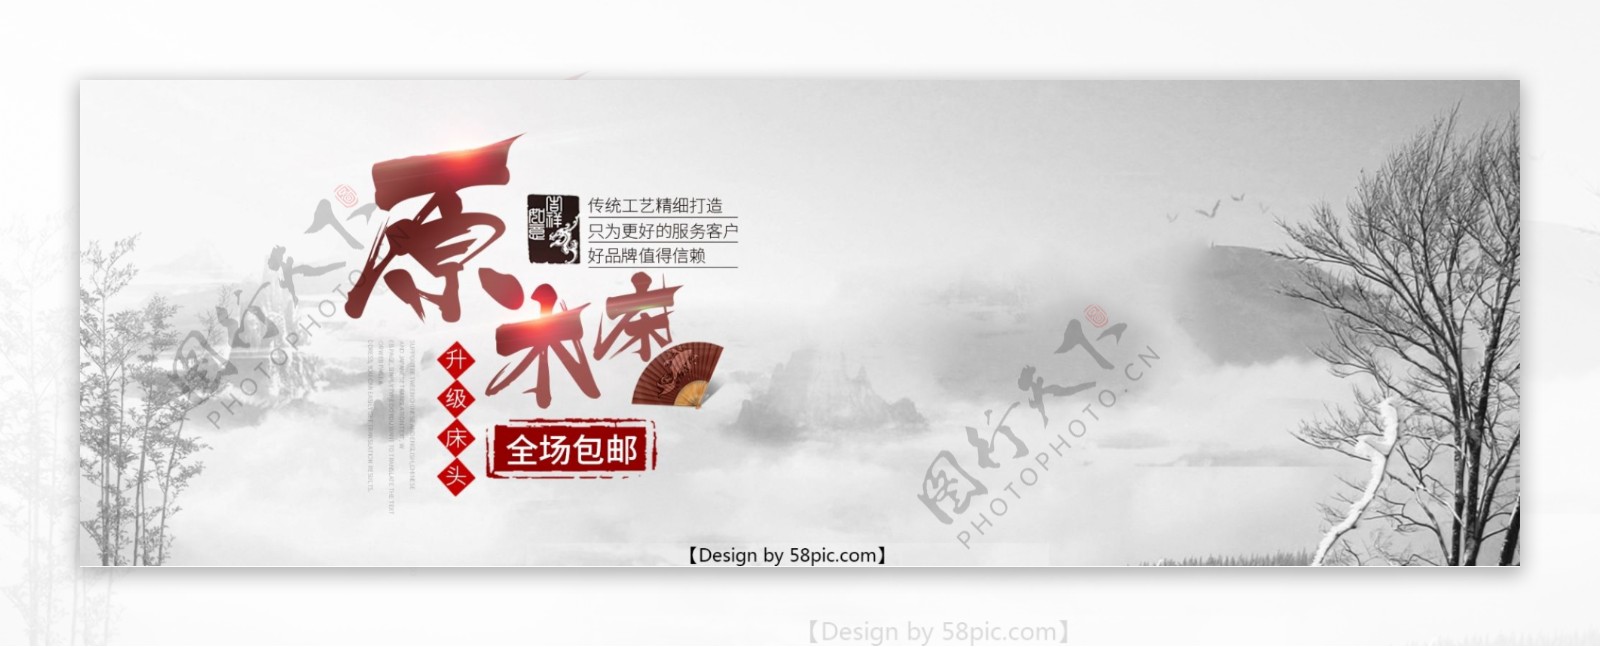 淘宝天猫木床全屏中国风海报PSD模版